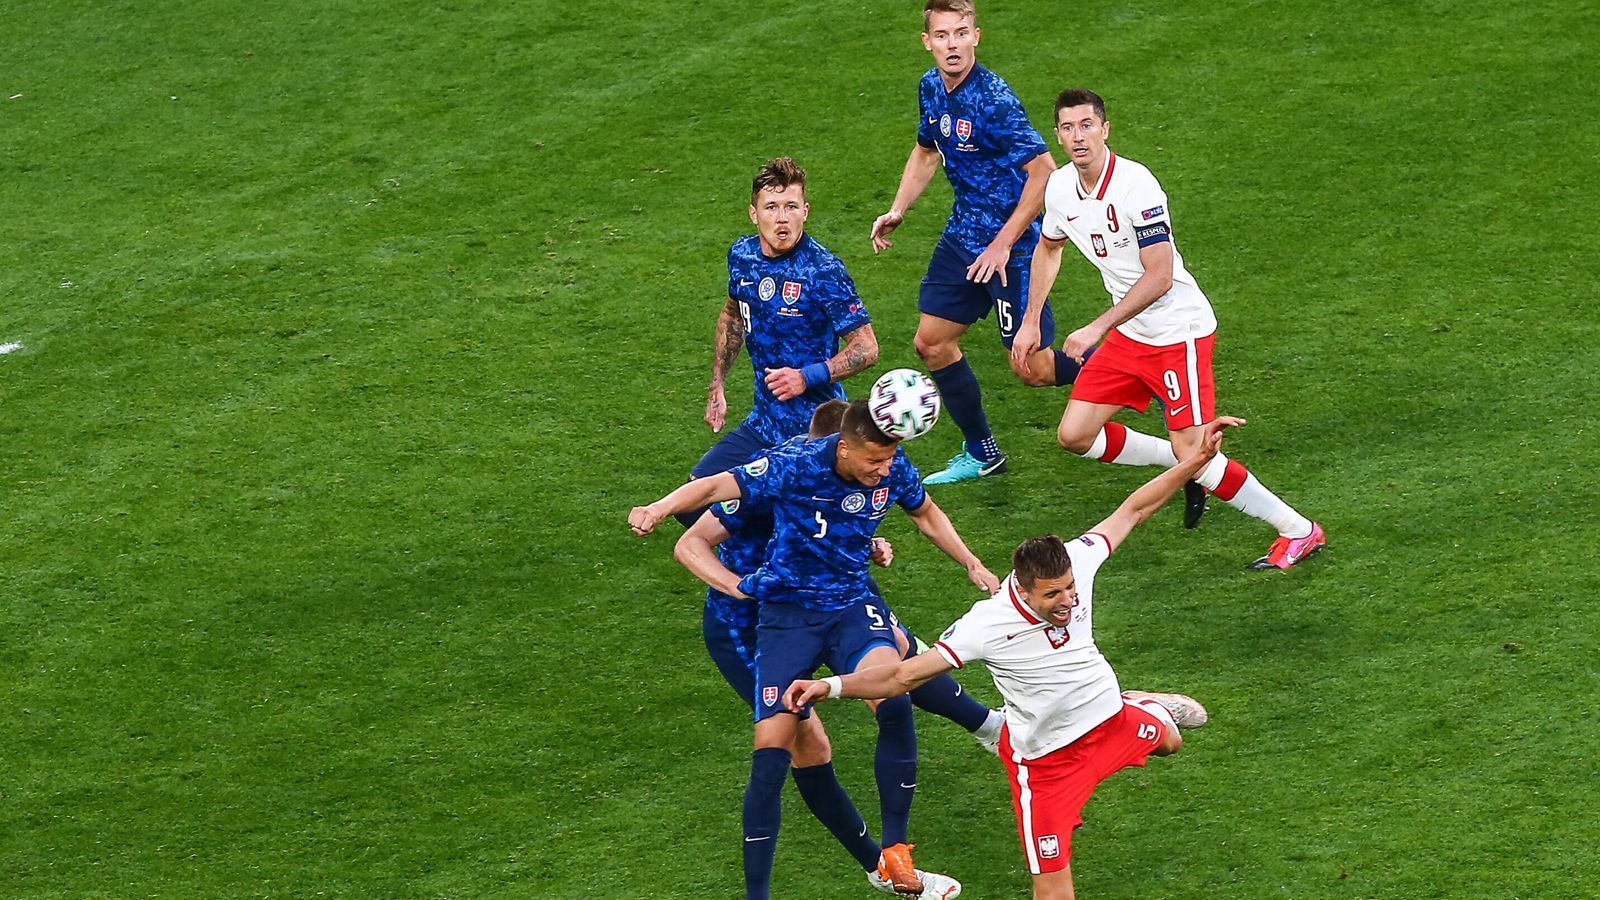 
                <strong>Wirkungsloser Weltfußballer</strong><br>
                Ein Weltfußballer ist nicht genug: Robert Lewandowski und die polnische Nationalmannschaft sind mit einer bitteren 1:2-Niederlage gegen die Slowakei in die EM gestartet.
              